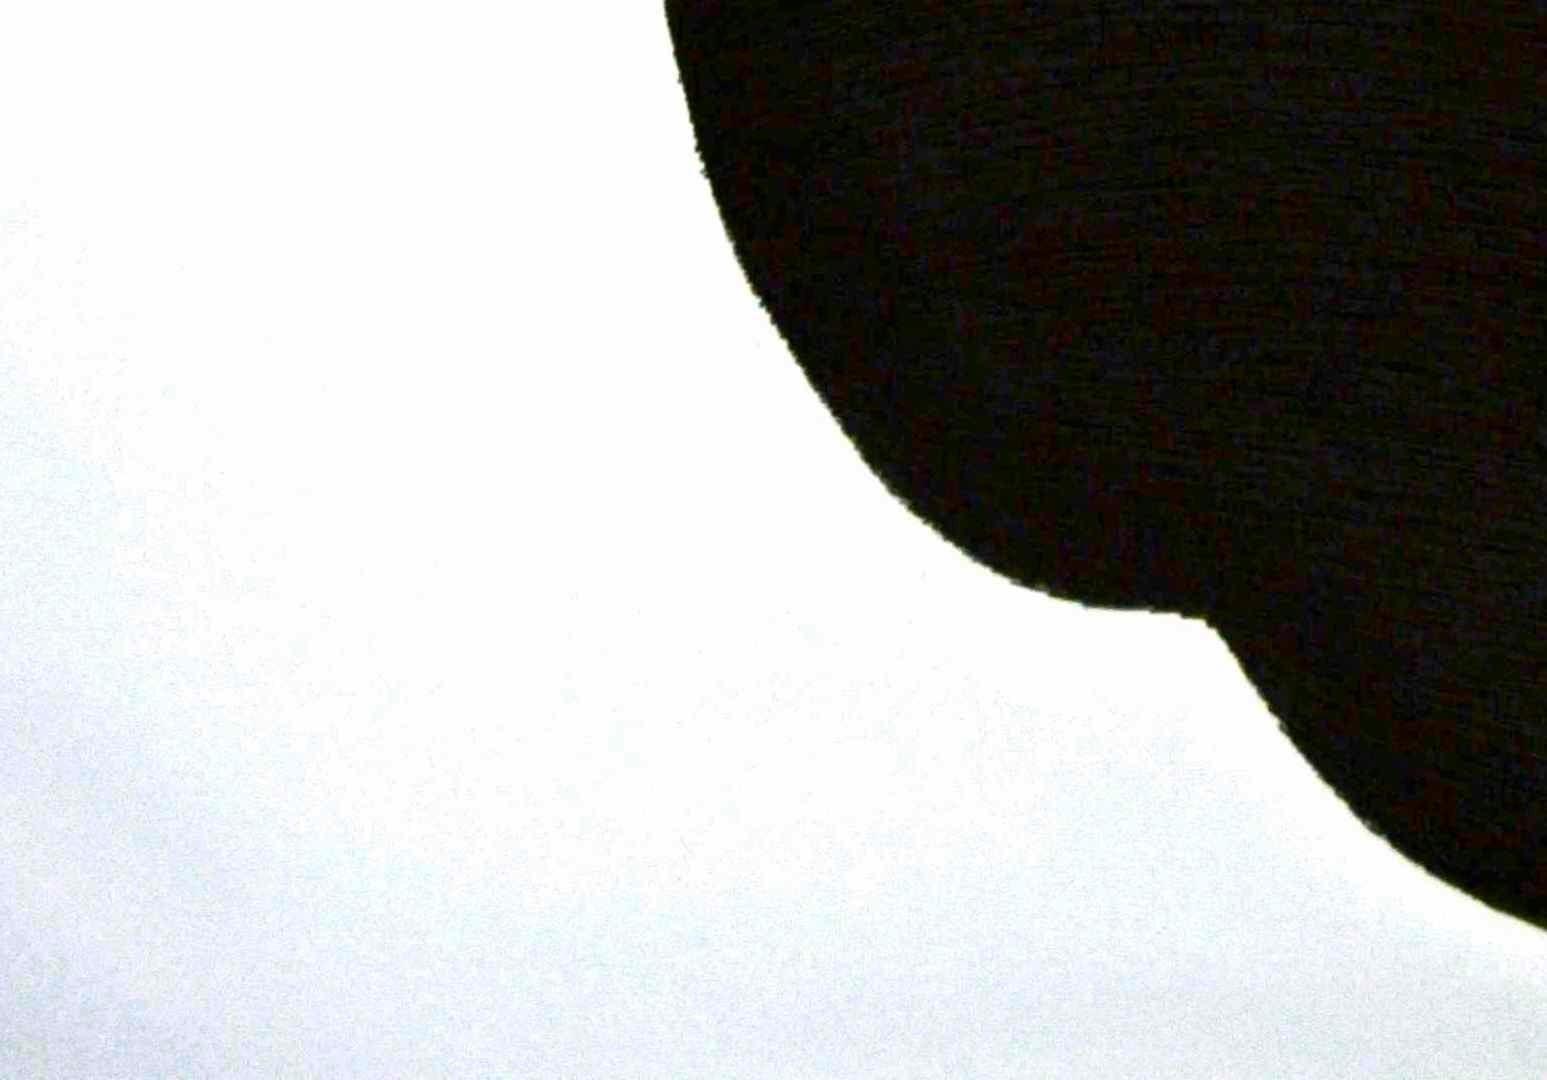 Silhouette - Original Etching by Giacomo Porzano - 1972 For Sale 4